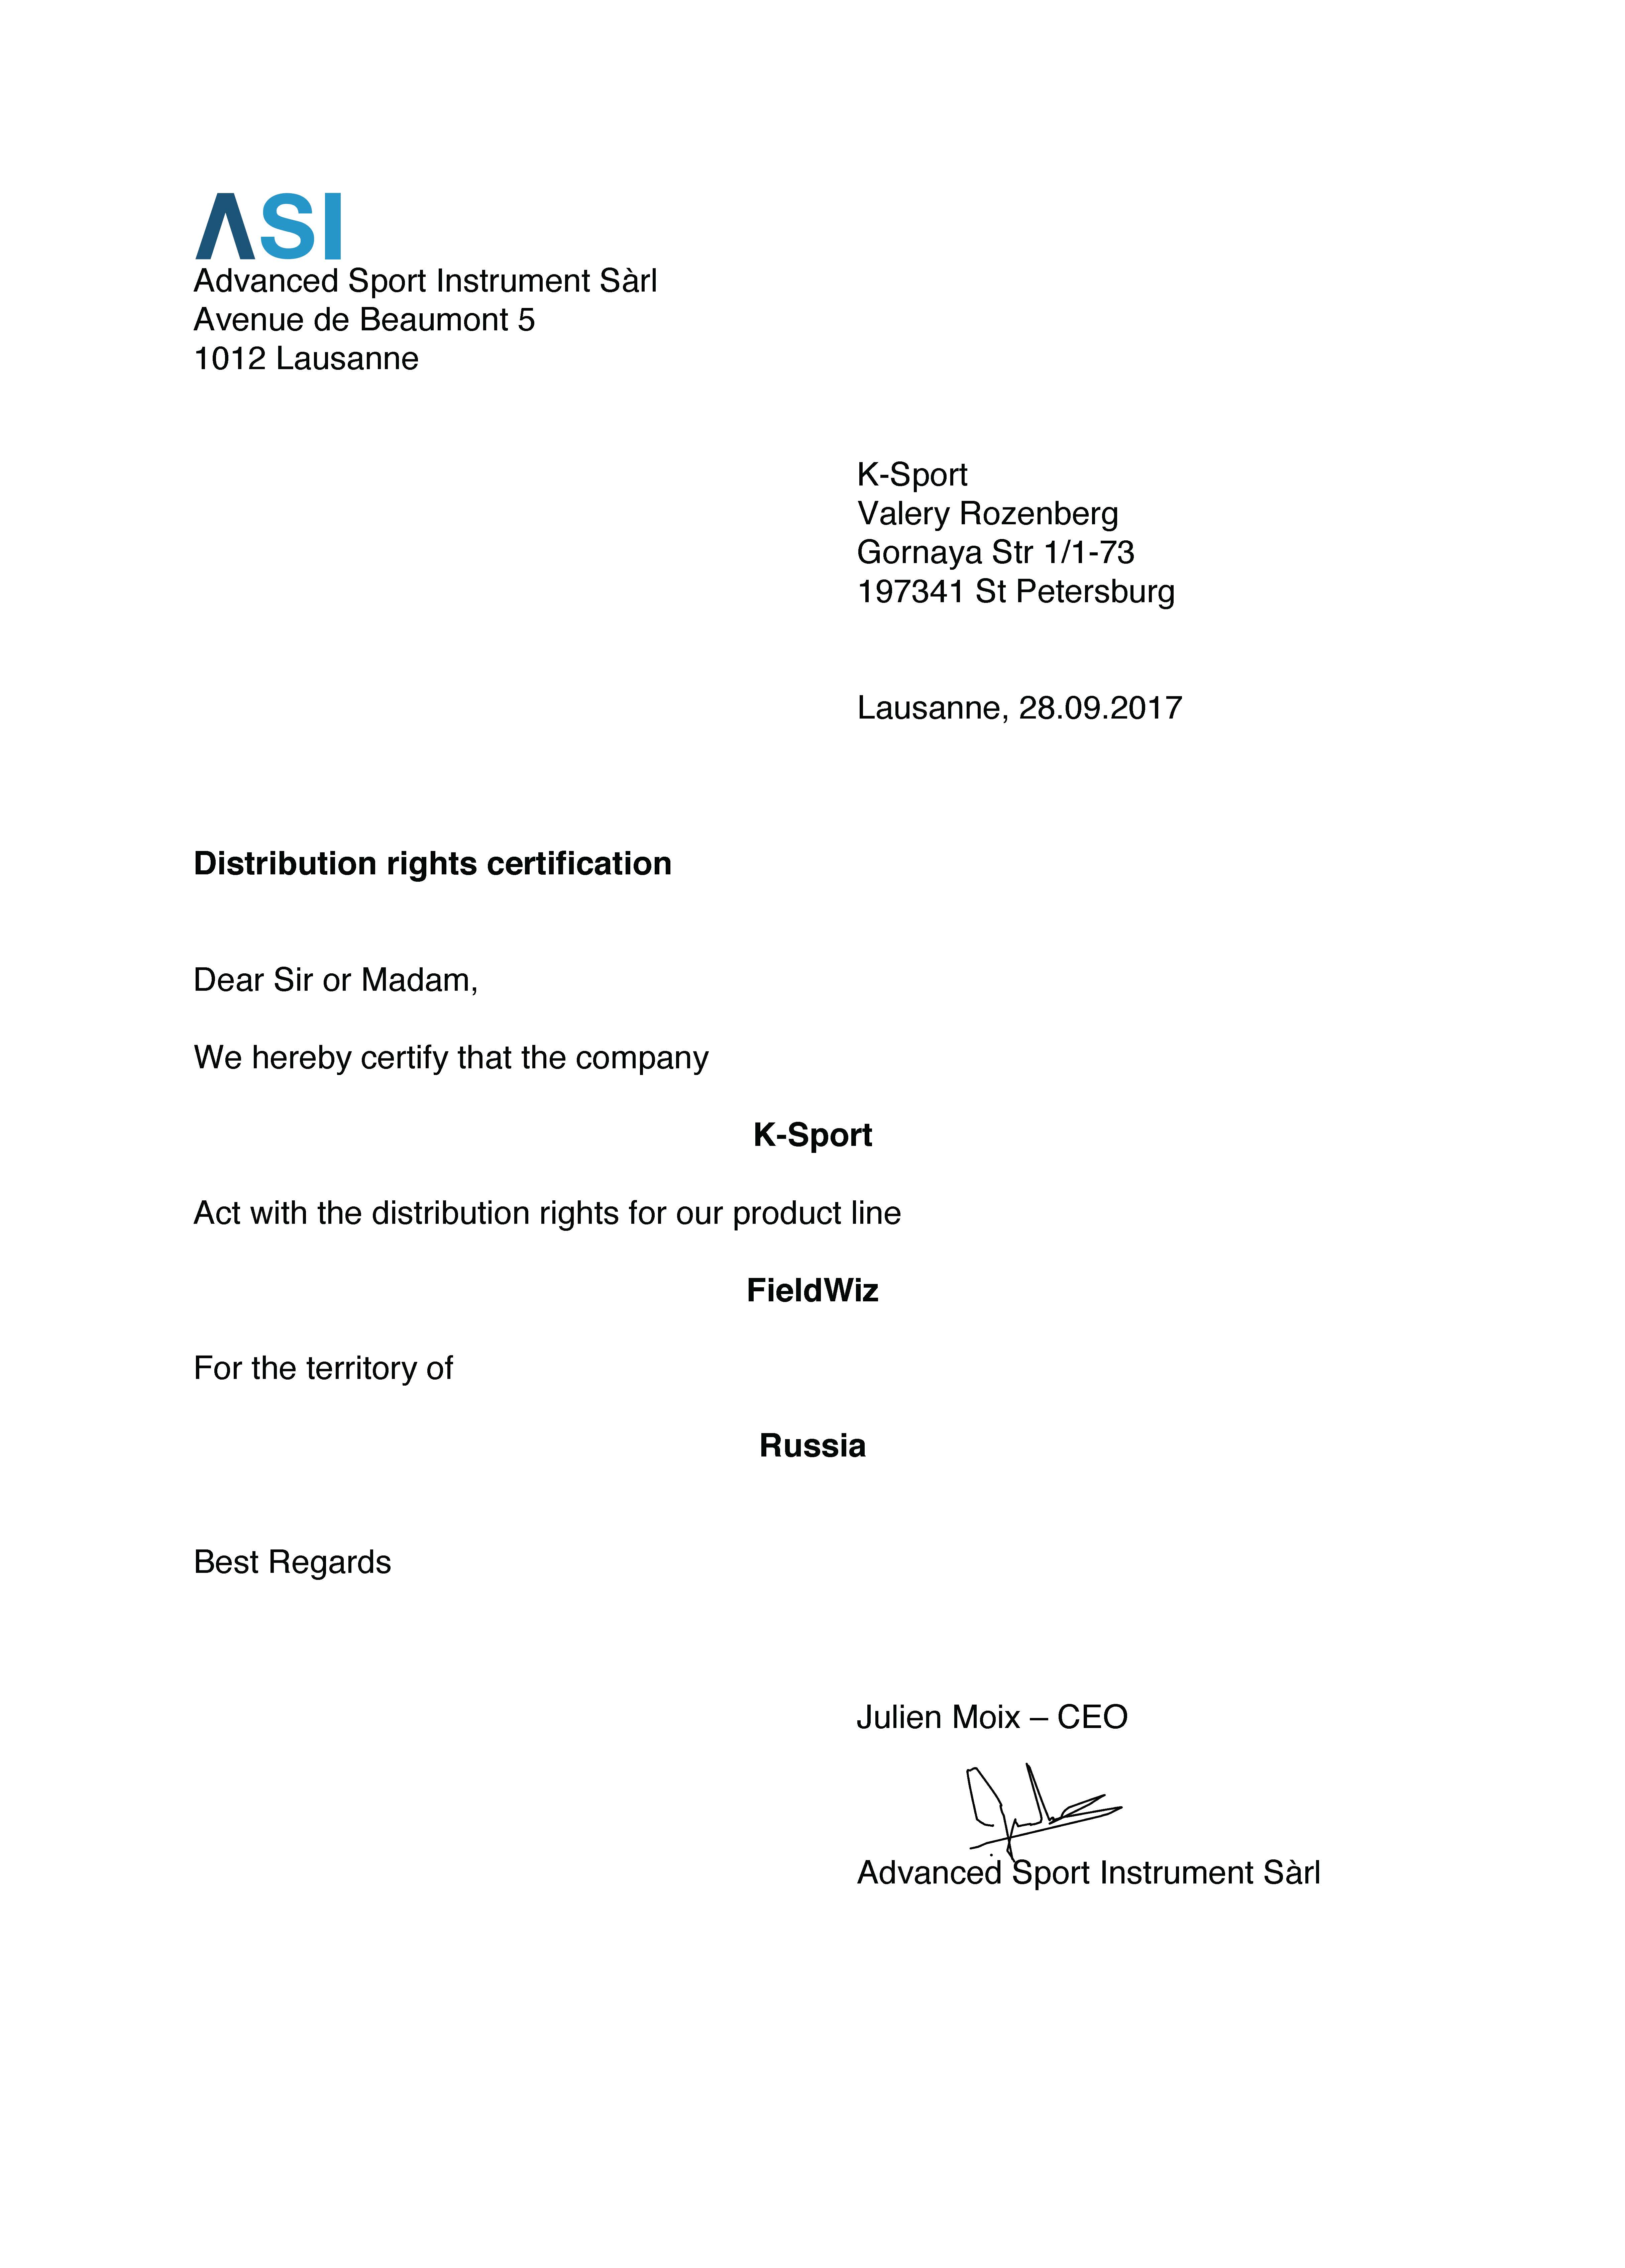 FieldWiz Certificate